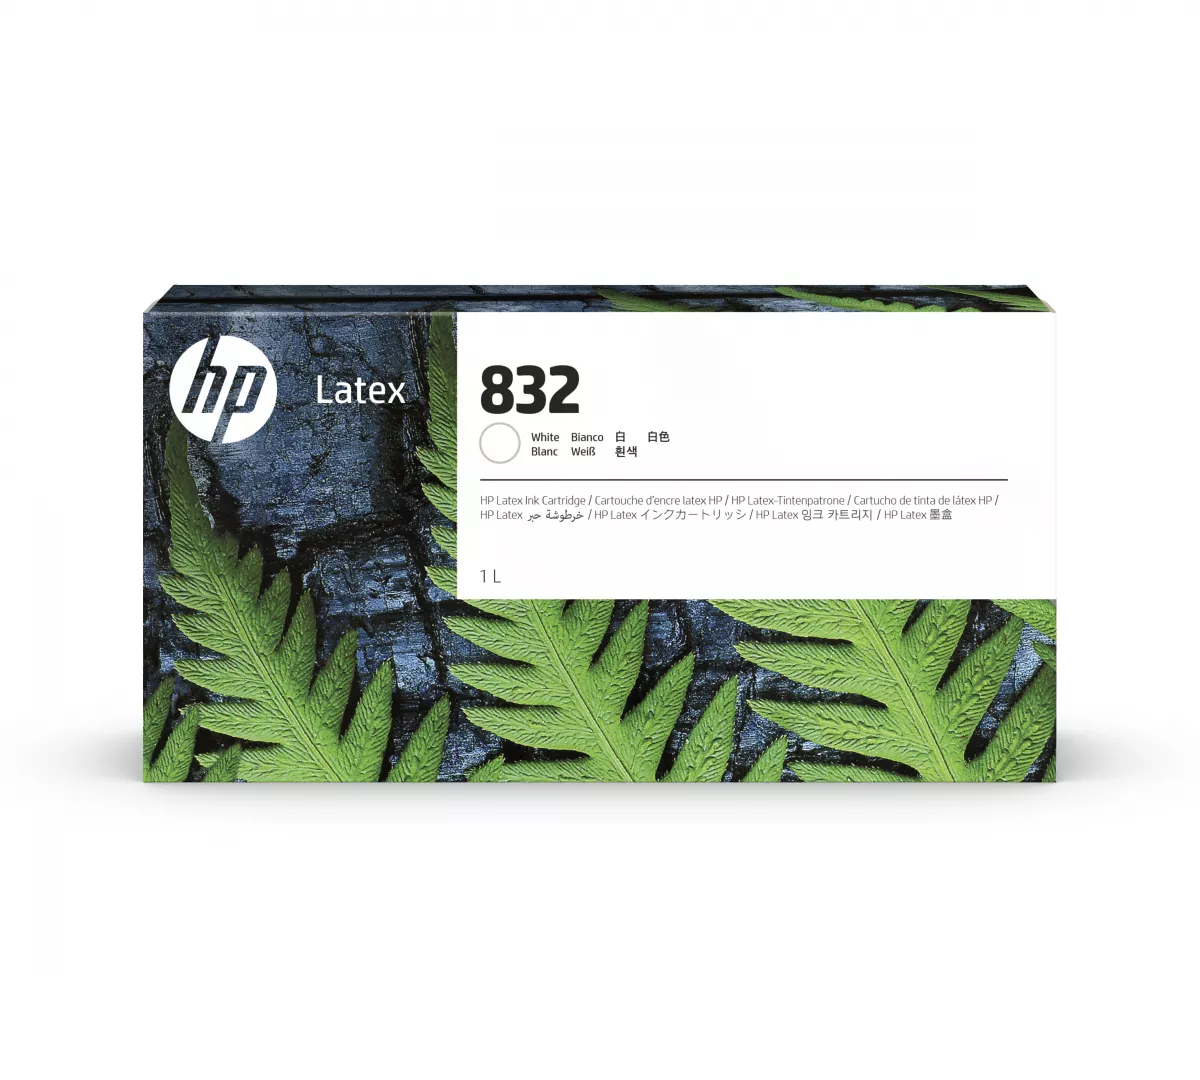 HP 832 White Latex Ink Cartridge 1 L 1